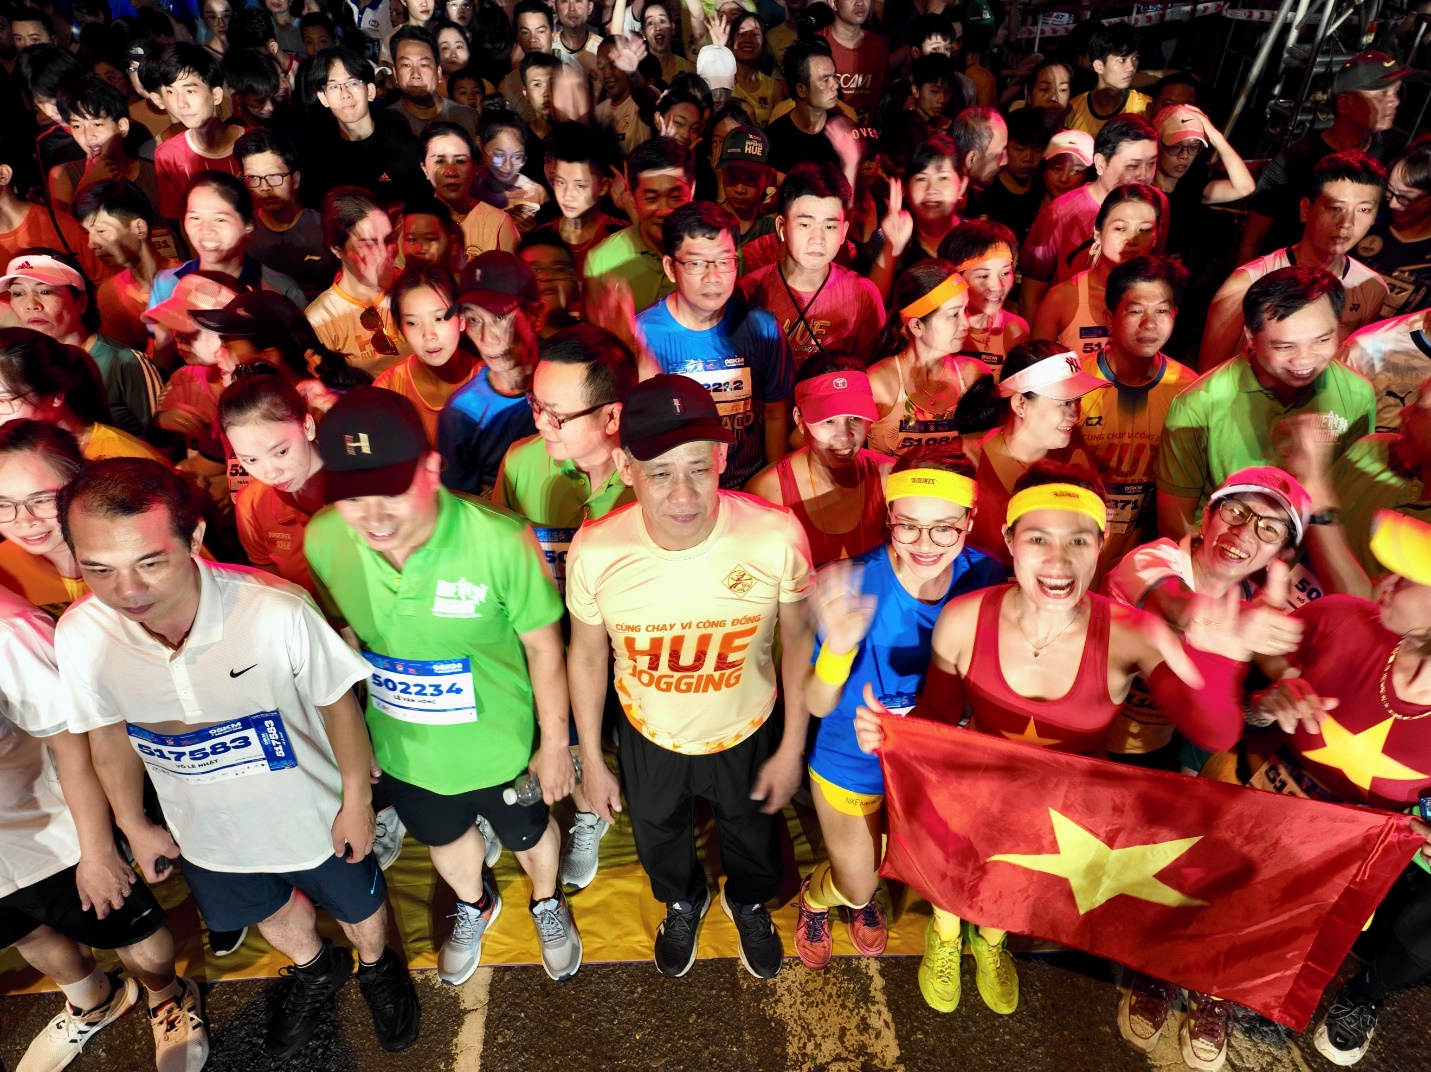 Hơn vạn người tham gia giải chạy ‘Hue jogging - cùng chạy vì cộng đồng’ - 8